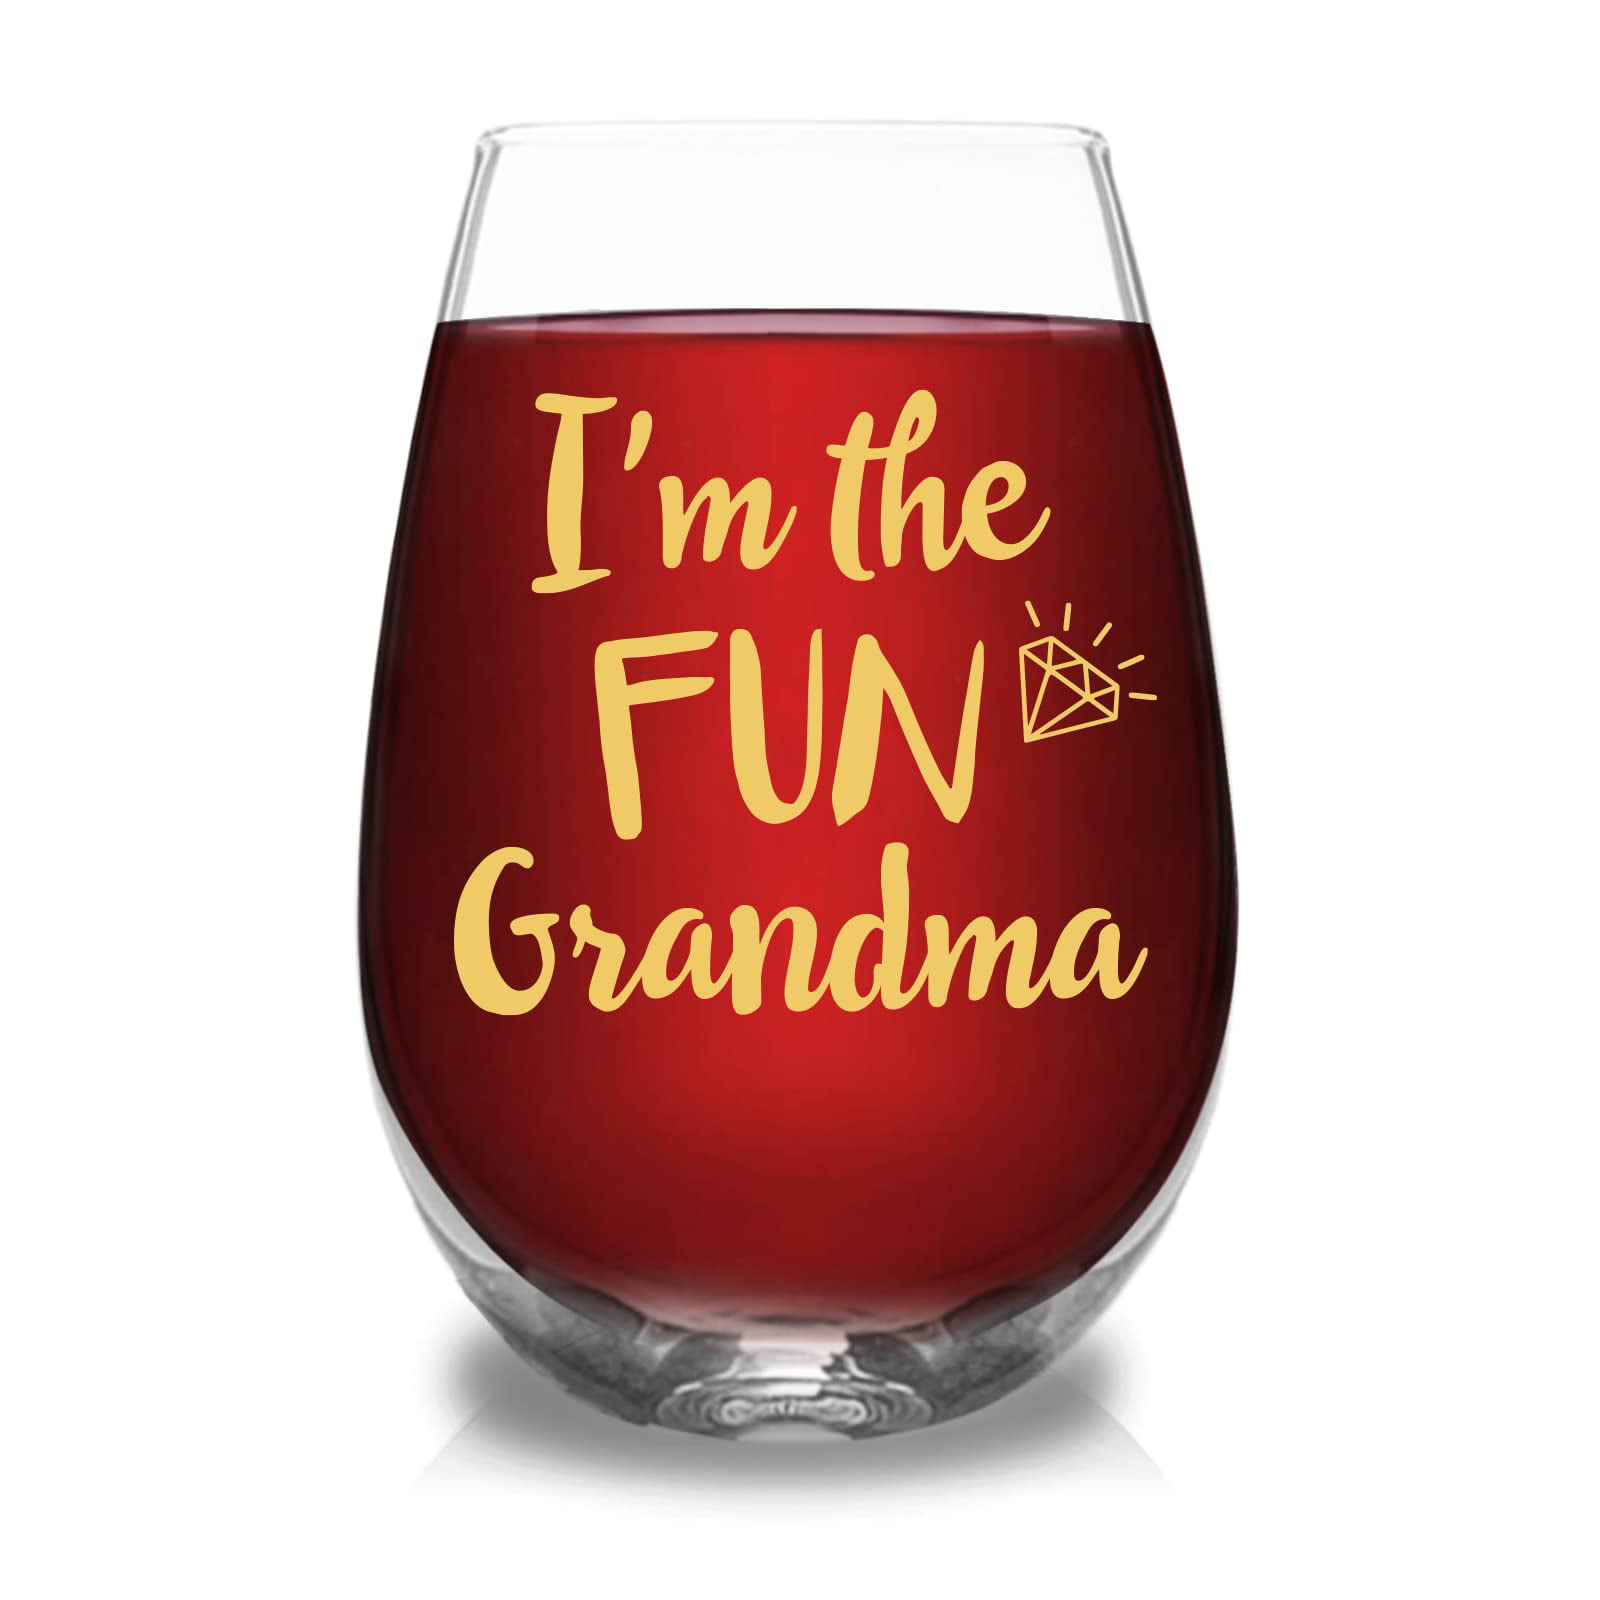 I'm the FUN Grandma Funny Wine Glass Gifts for Grandma - Novelty